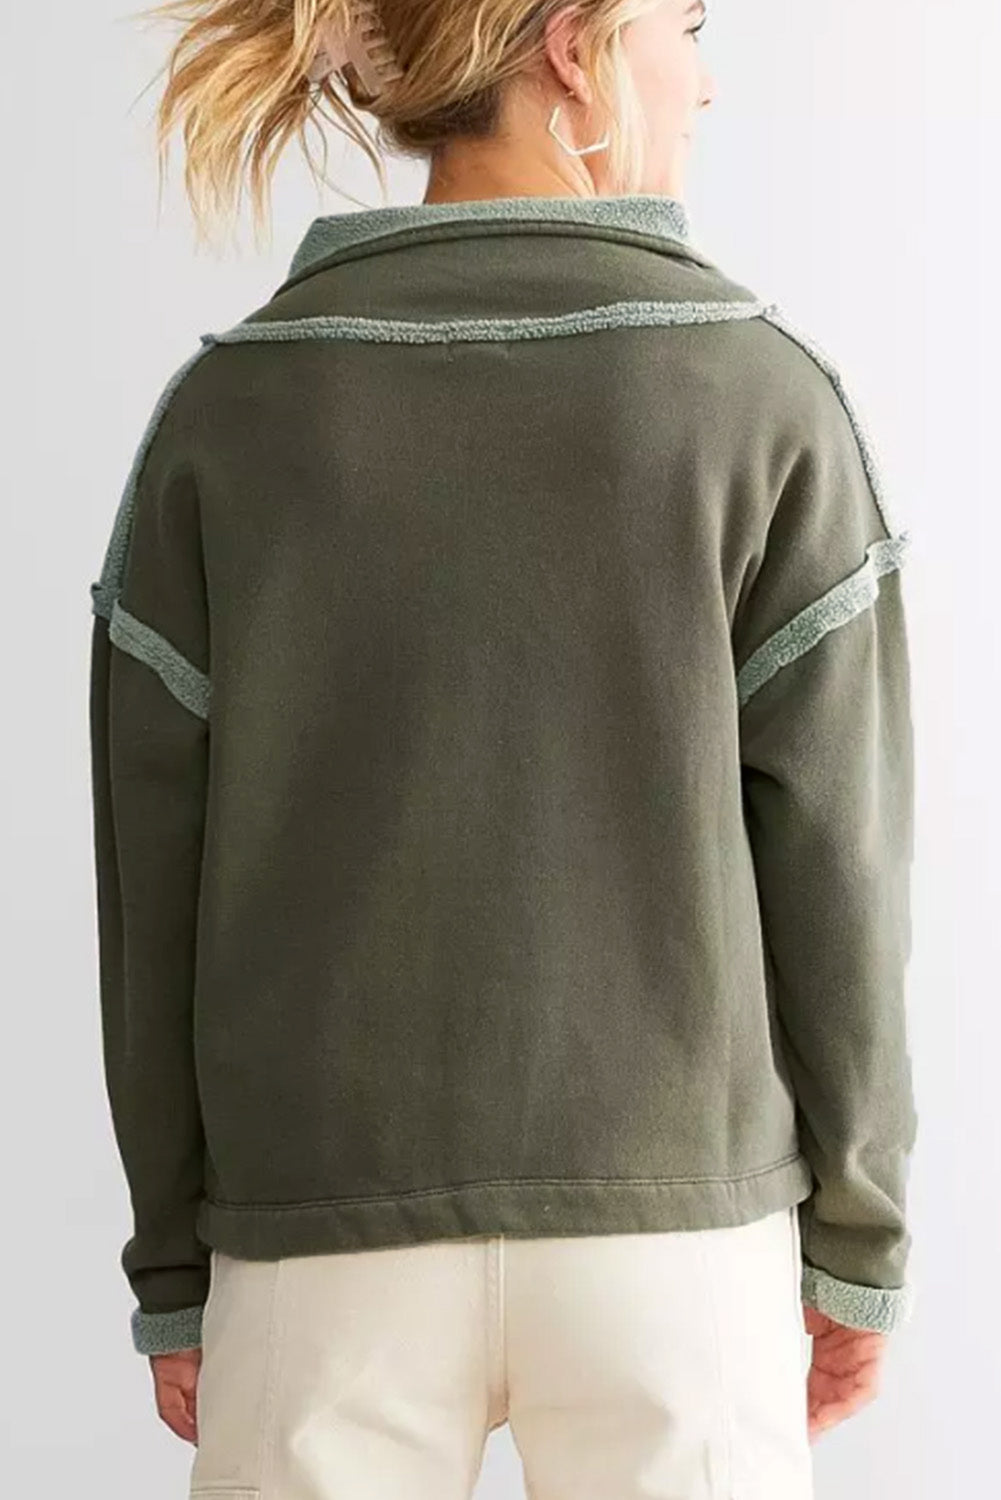 Grünes Fleece-Sweatshirt mit freiliegender Naht und geknöpftem Ausschnitt